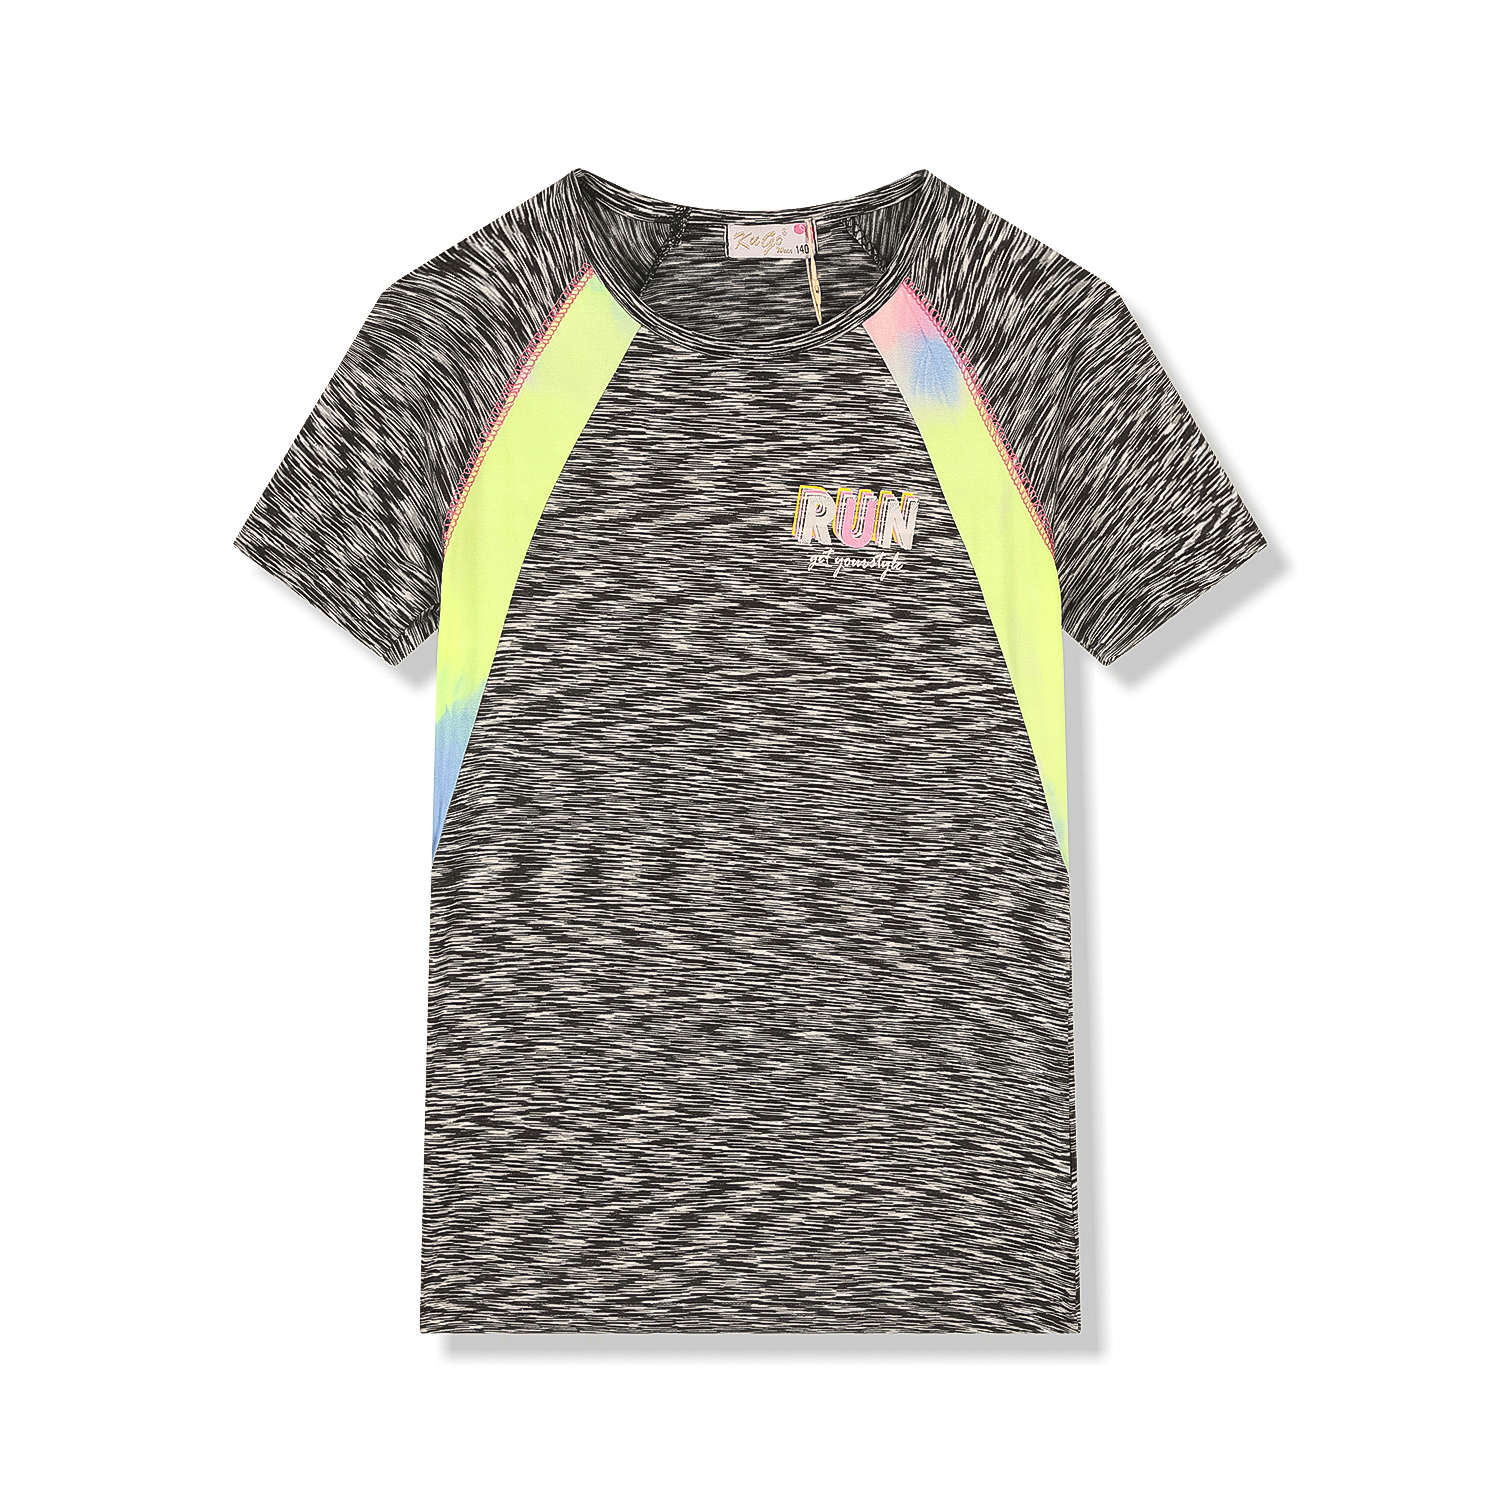 Dívčí funkční tričko - KUGO FC6756, šedočerná Barva: Černá, Velikost: 146